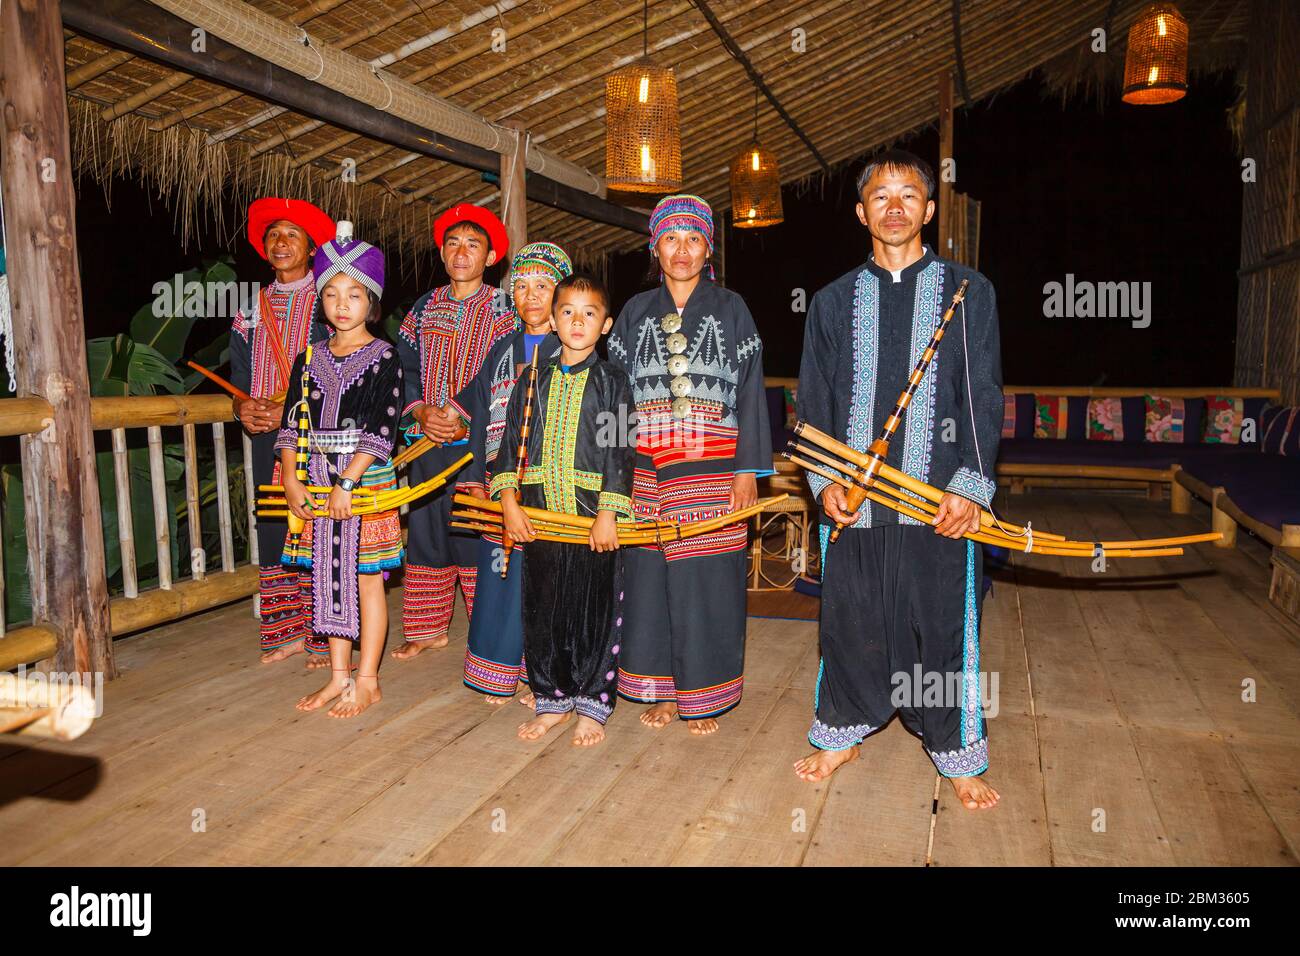 Une famille de musiciens, danseurs et animateurs Hmong à Chiang Khong dans la province de Chiang Rai, dans le nord de la Thaïlande, en costume traditionnel coloré local Banque D'Images